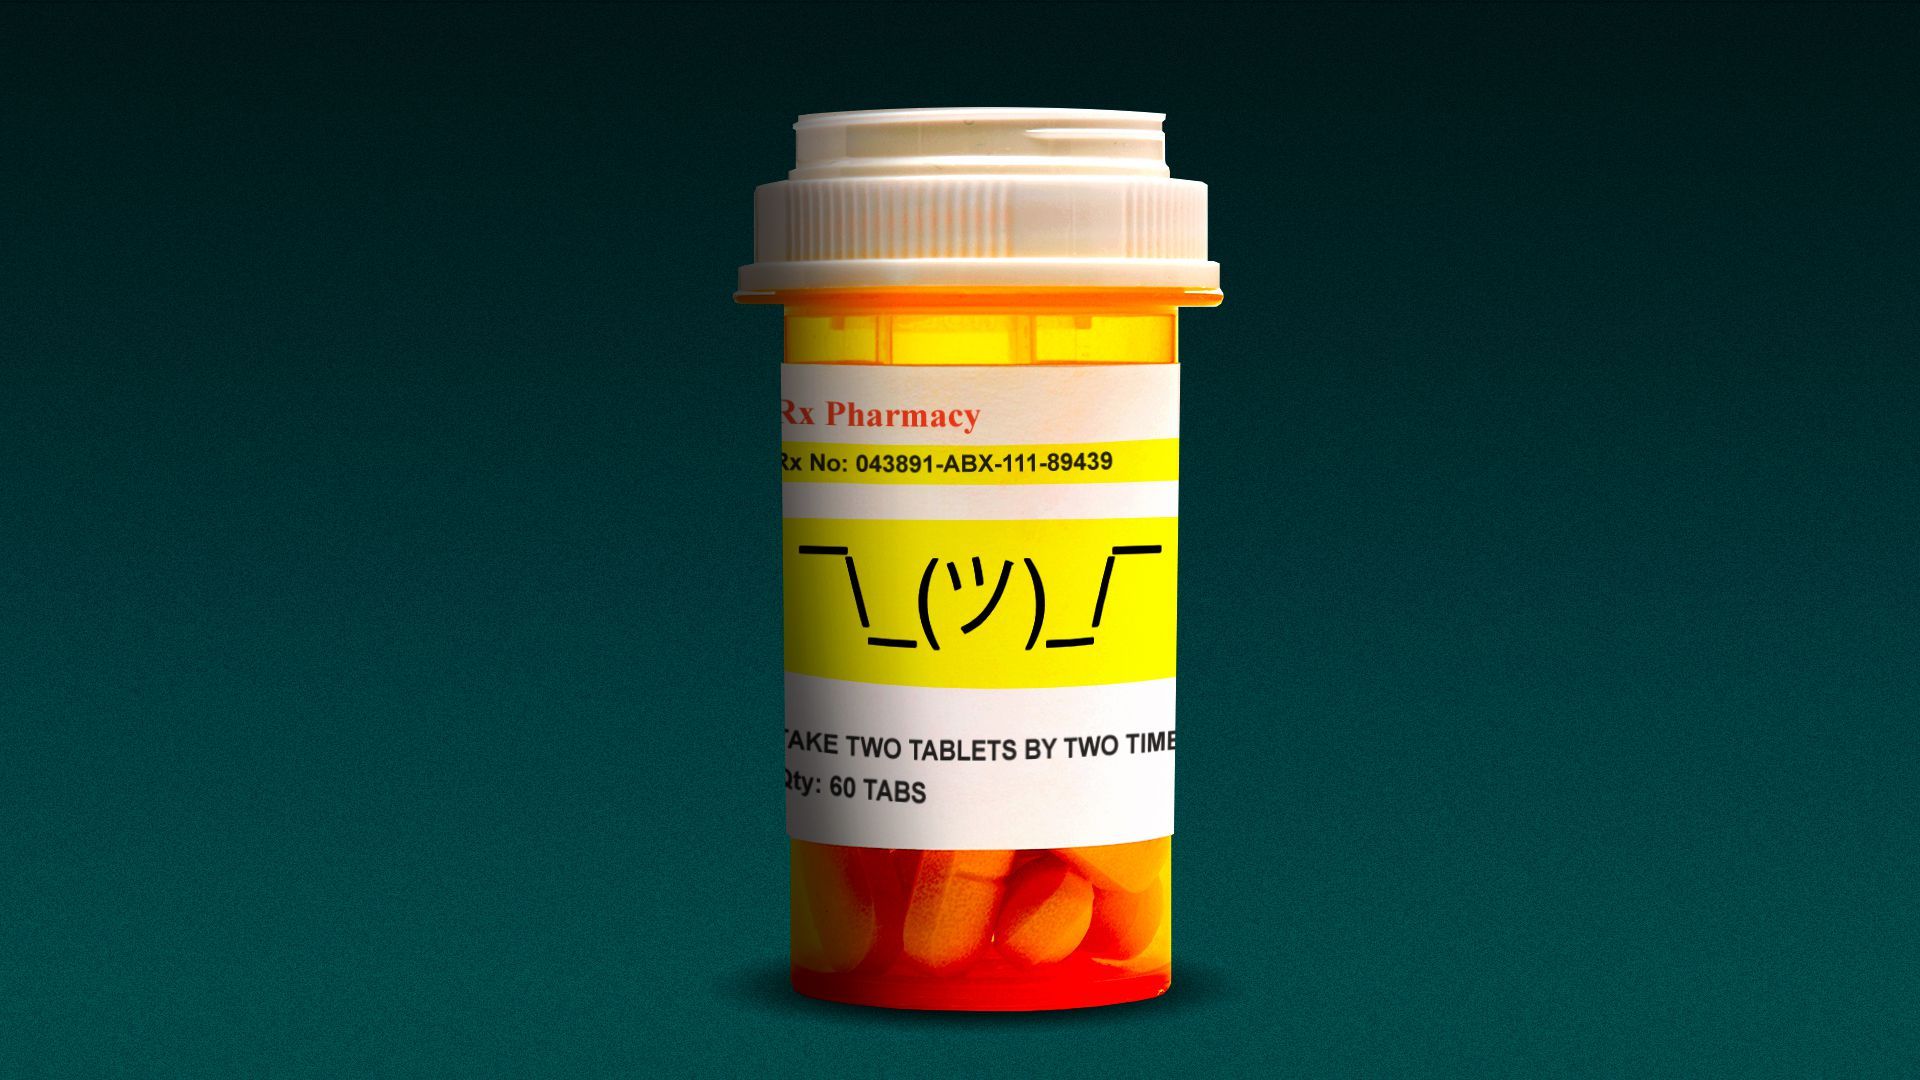 Illustration of a prescription drug bottle with a shrug emoji typed on the label